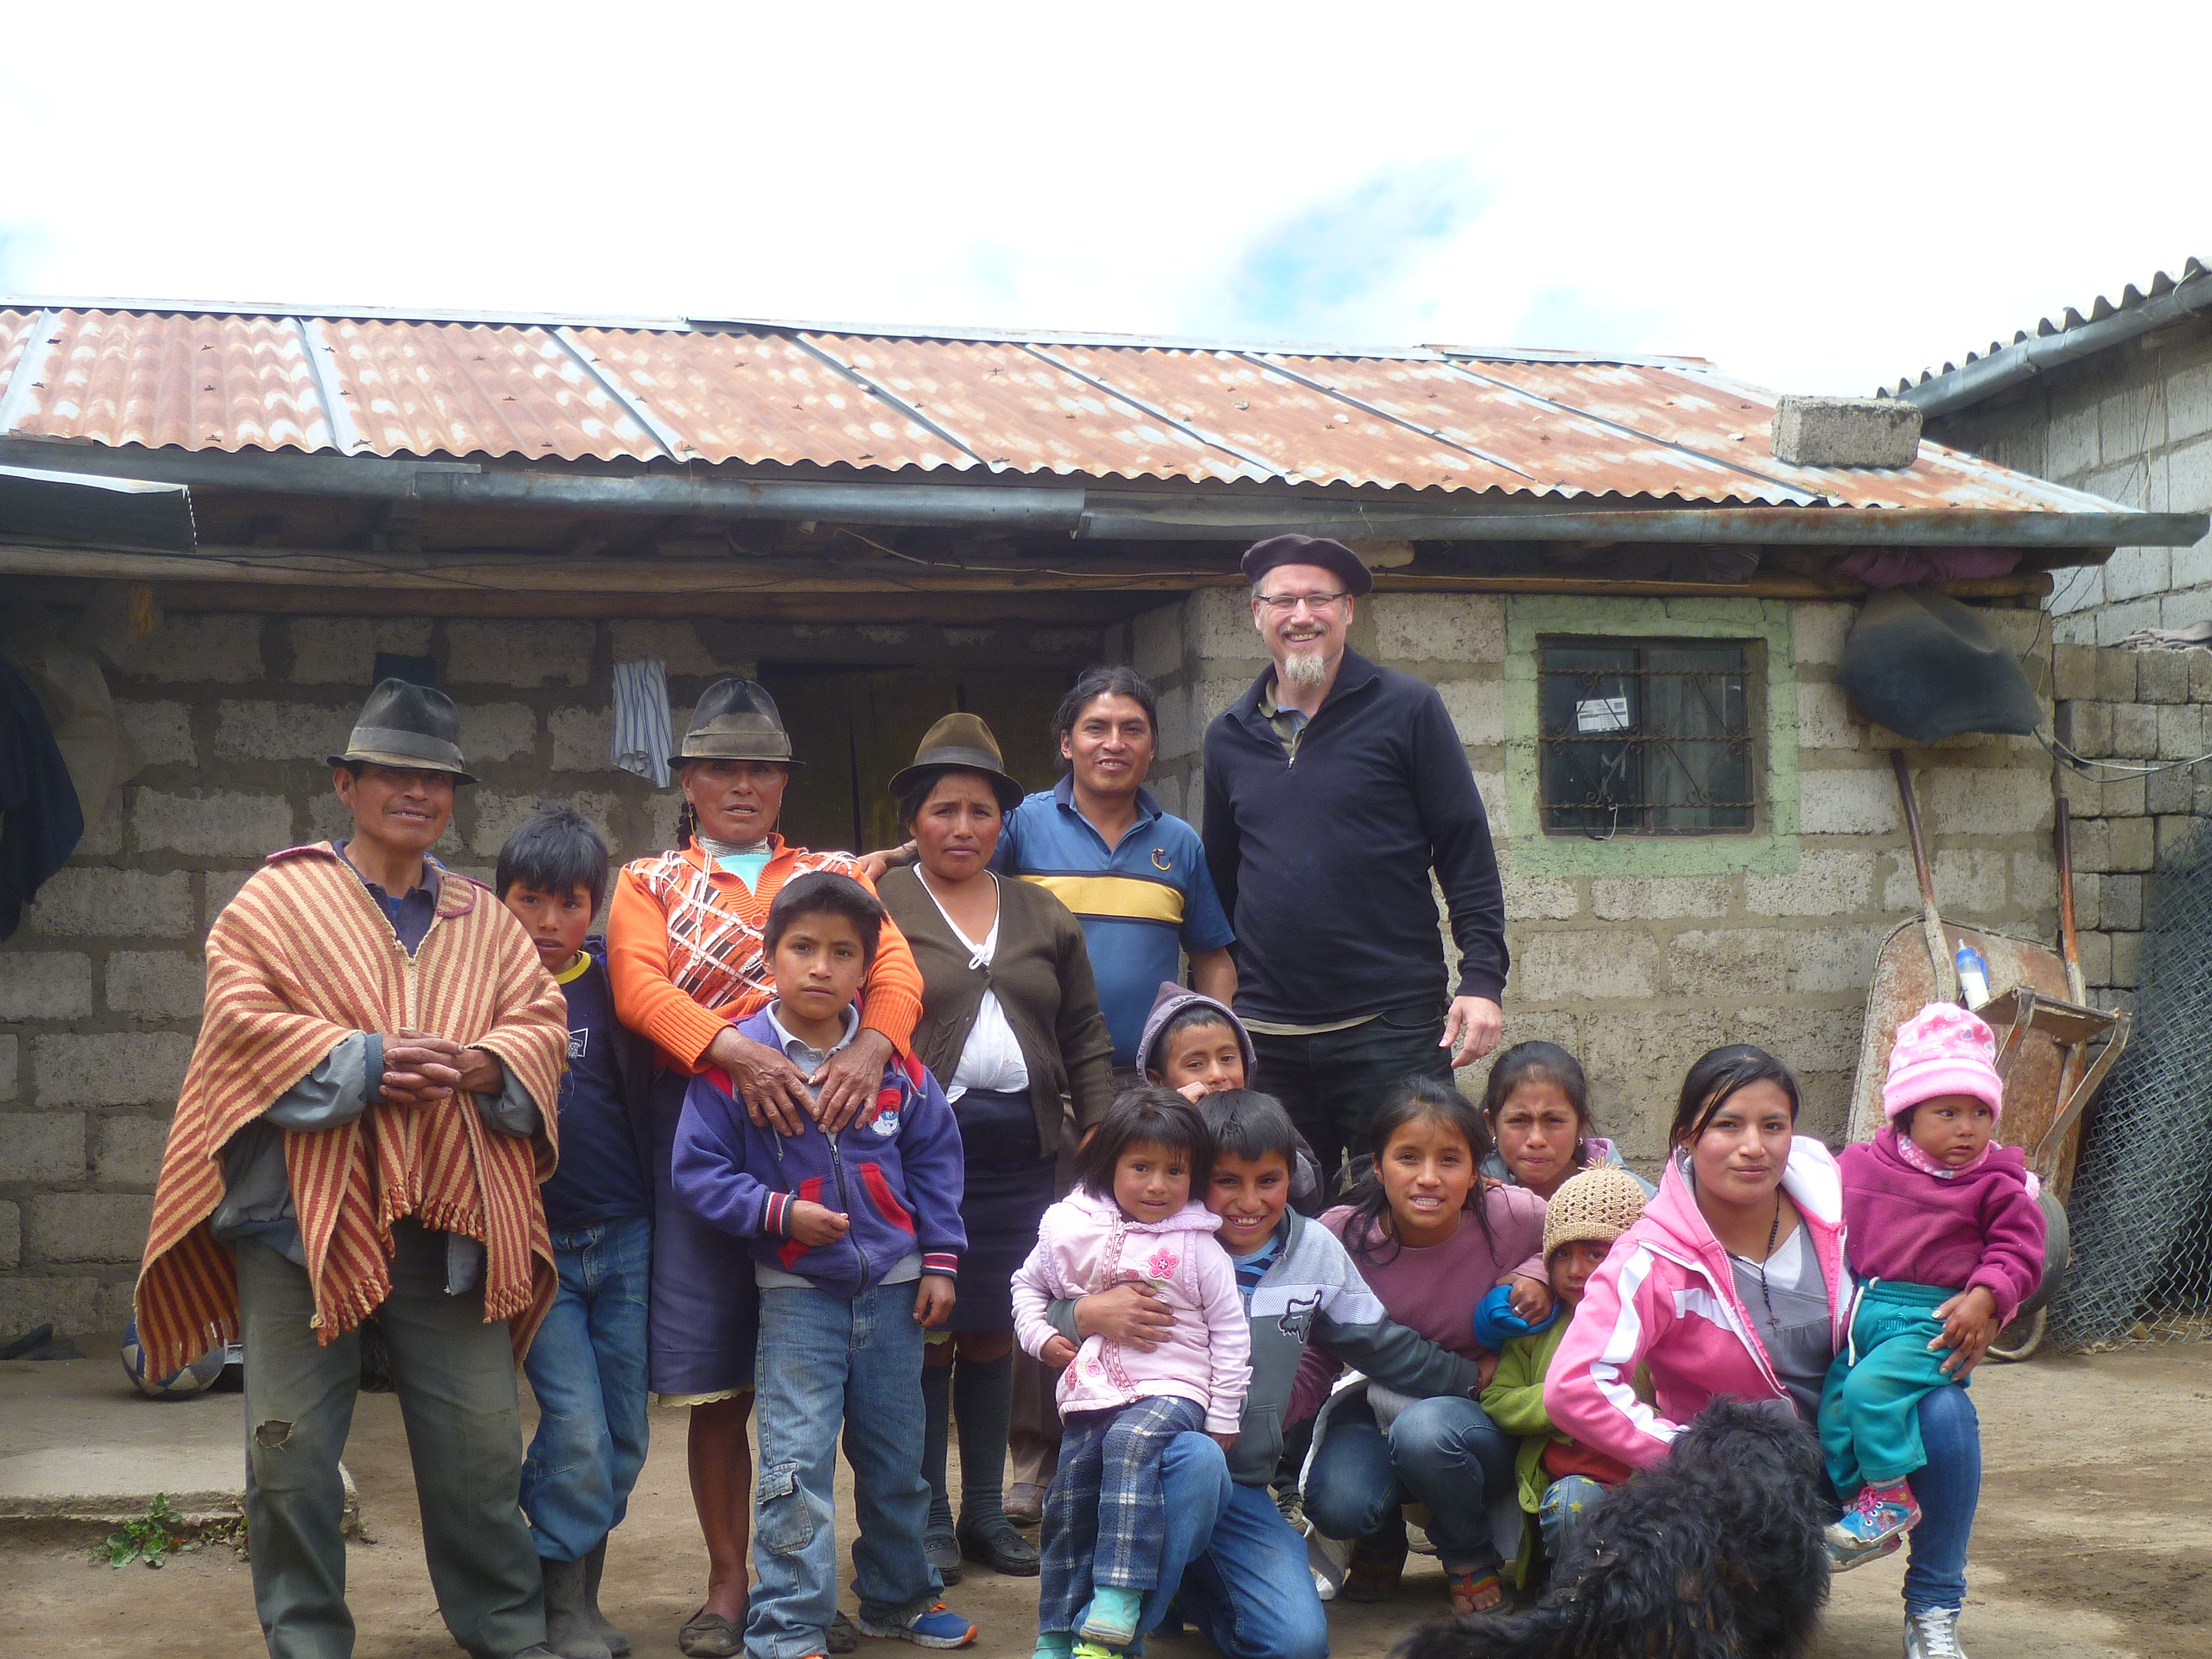 Prof. Olaf Kaltmeier umringt von Mitgliedern seiner Patenfamilie in Ecuador vor einer Hütte.